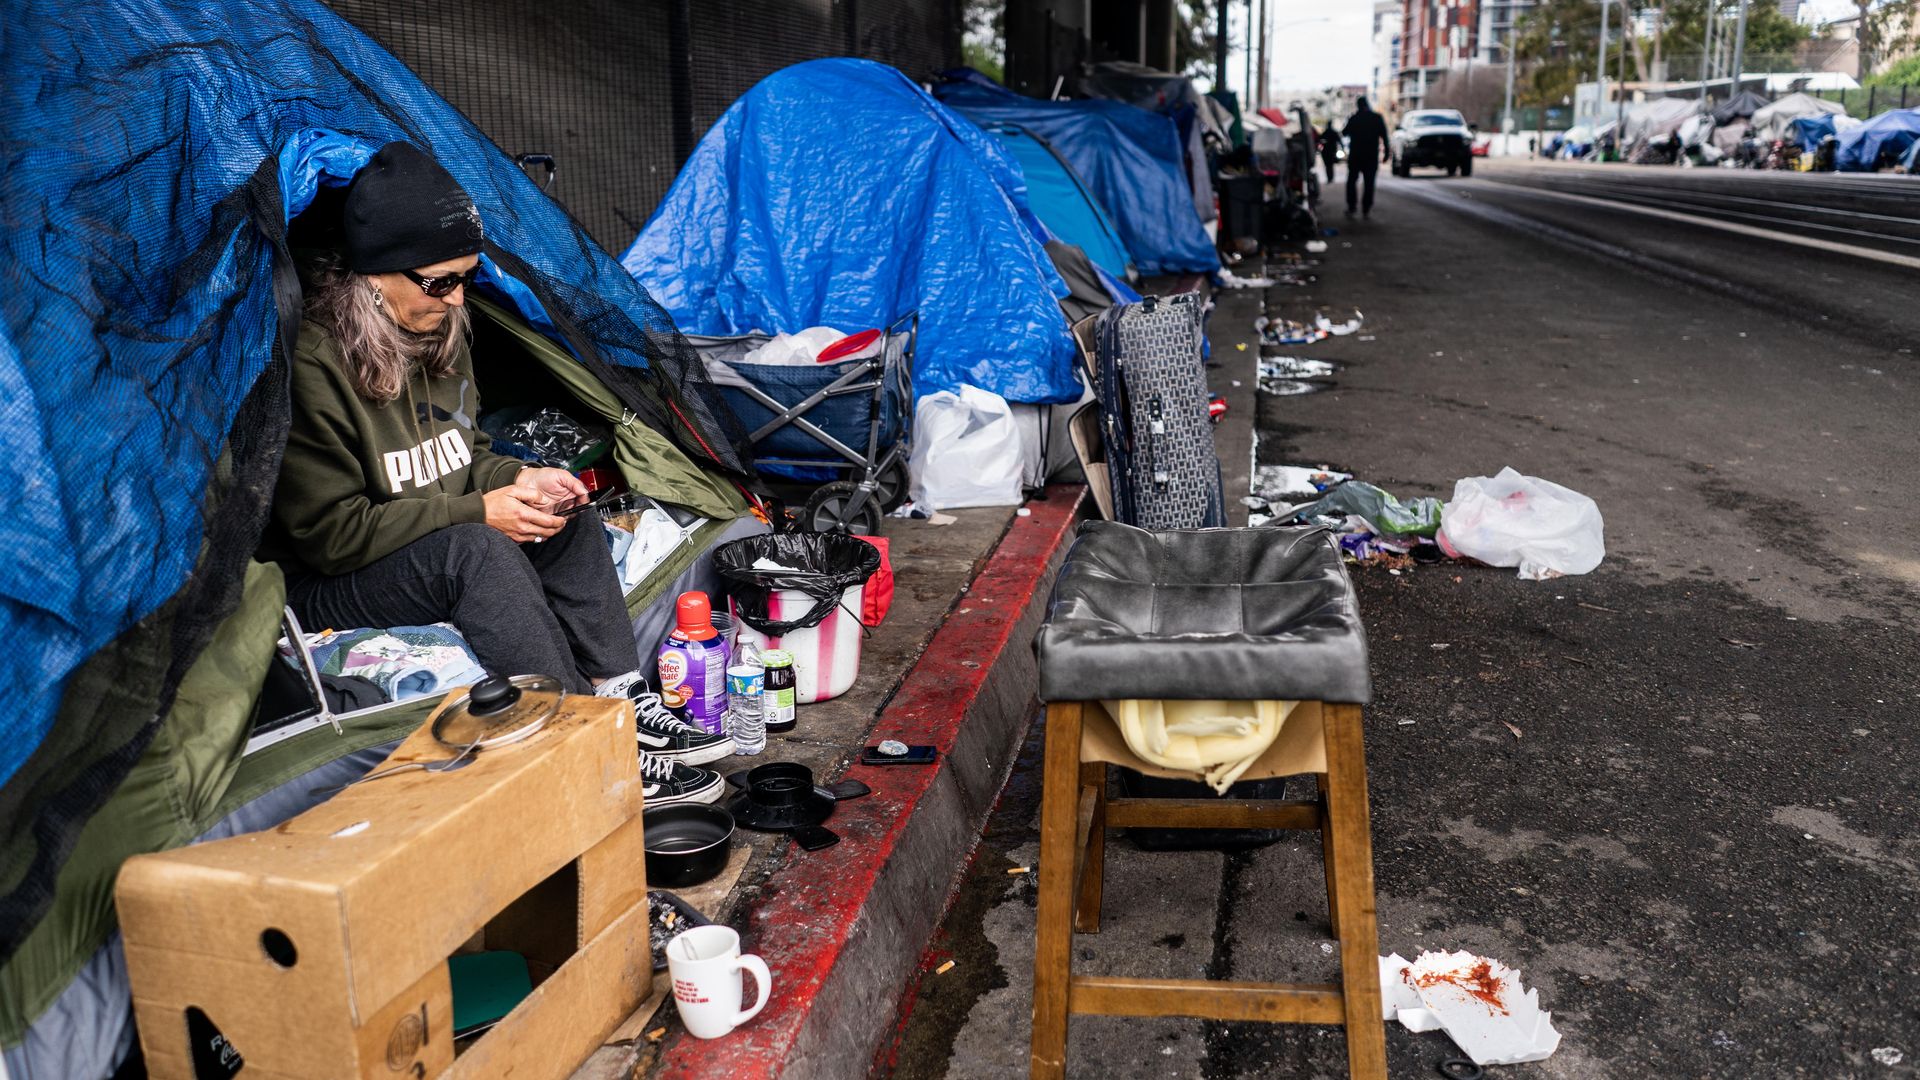 A homeless encampment in San Diego